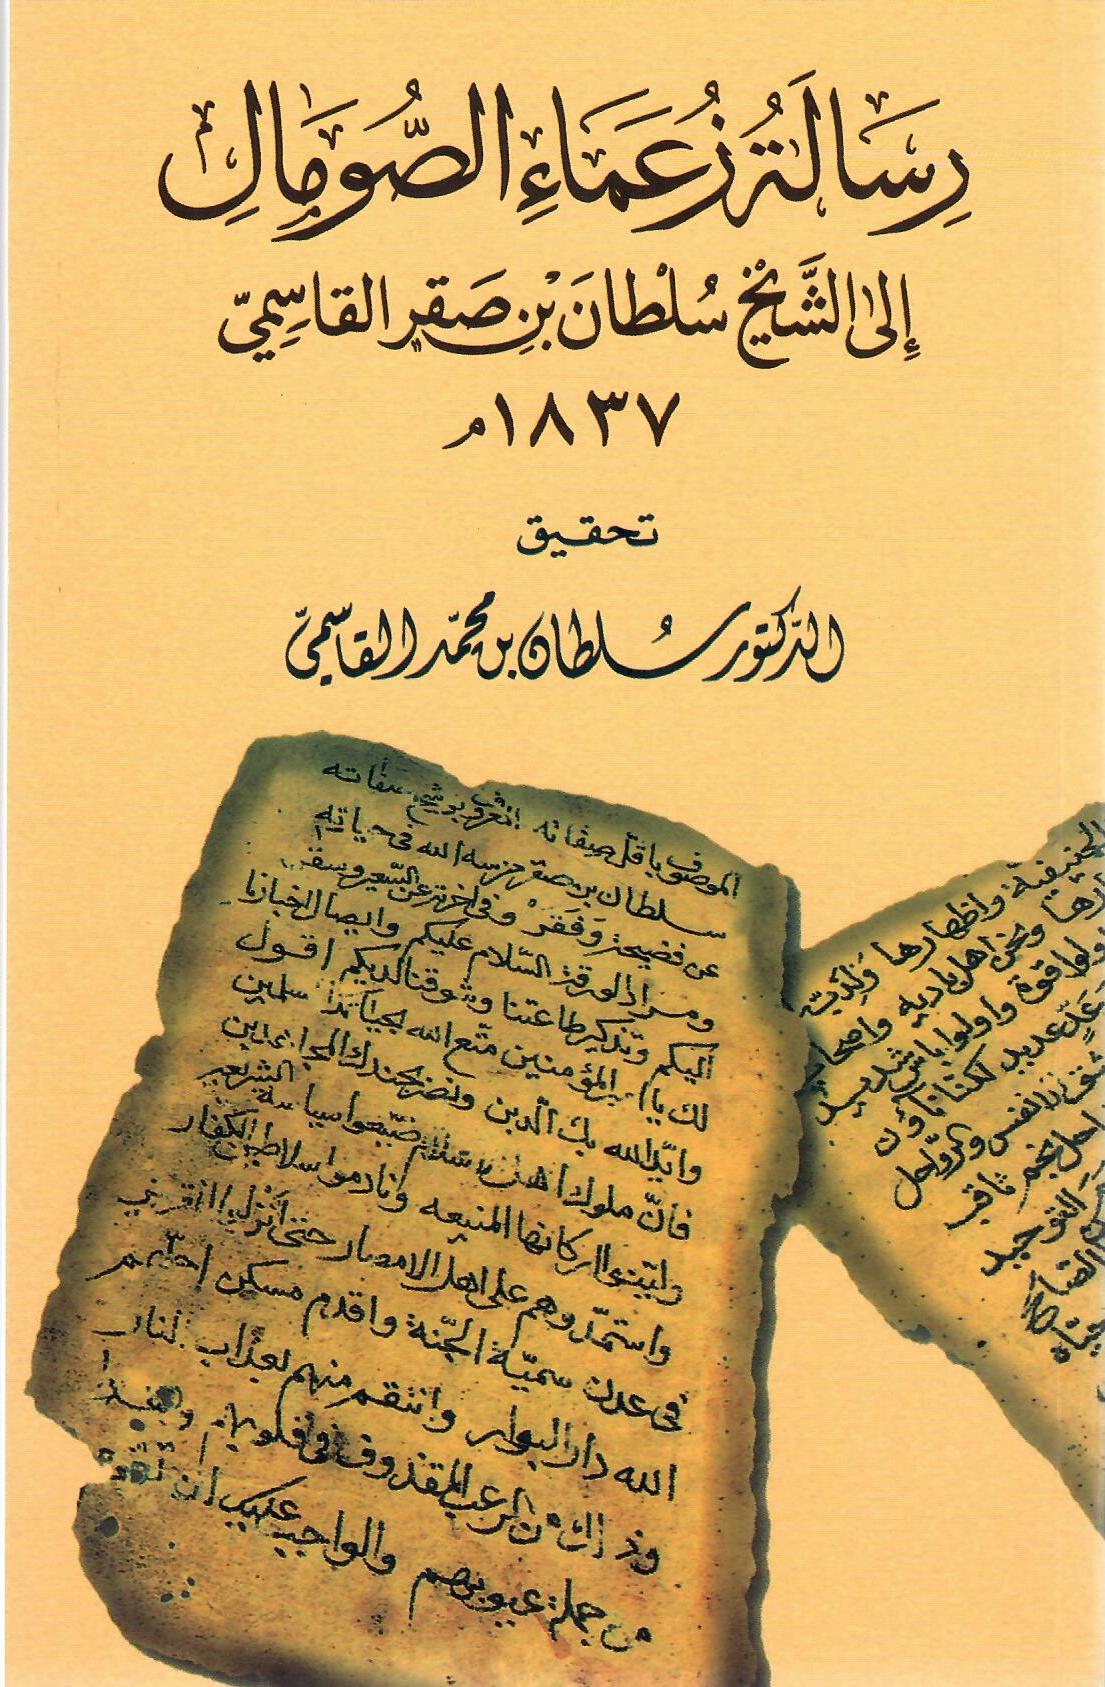 رسالة زعماء الصومال إلى الشيخ سلطان بن صقر القاسمي 1837م